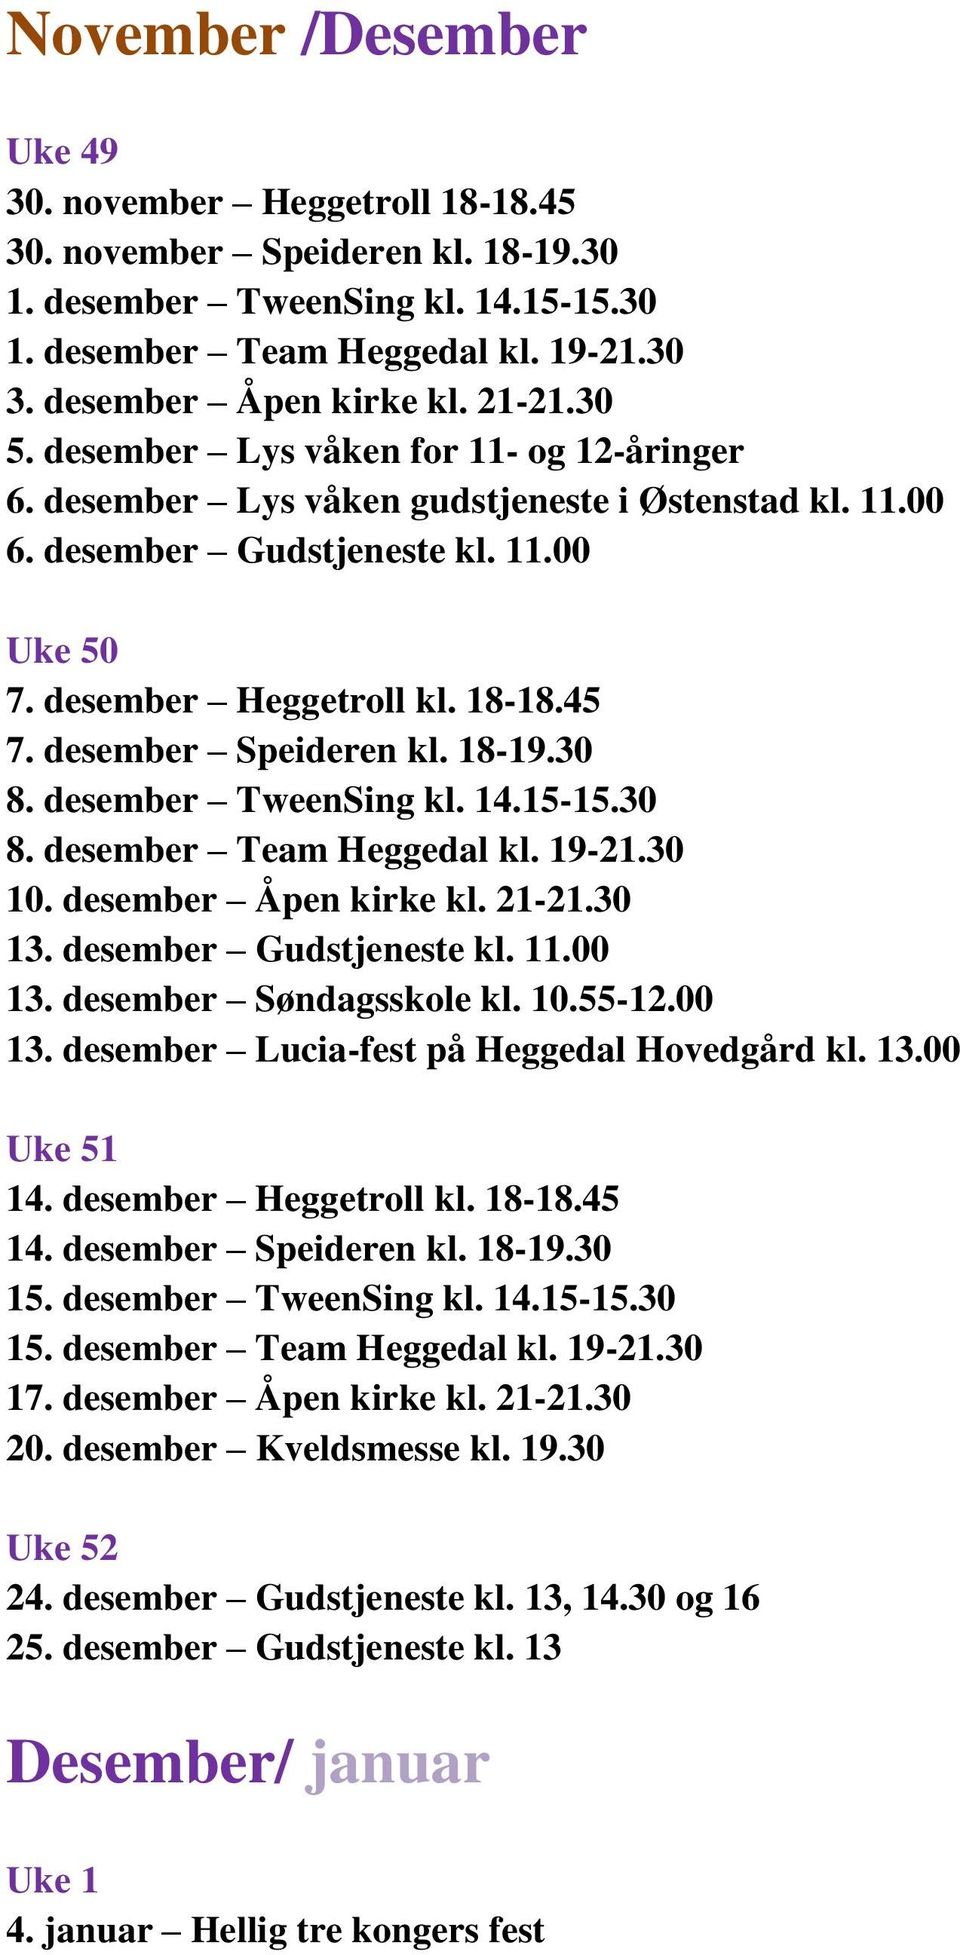 desember Speideren kl. 18-19.30 8. desember TweenSing kl. 14.15-15.30 8. desember Team Heggedal kl. 19-21.30 10. desember Åpen kirke kl. 21-21.30 13. desember Gudstjeneste kl. 11.00 13.